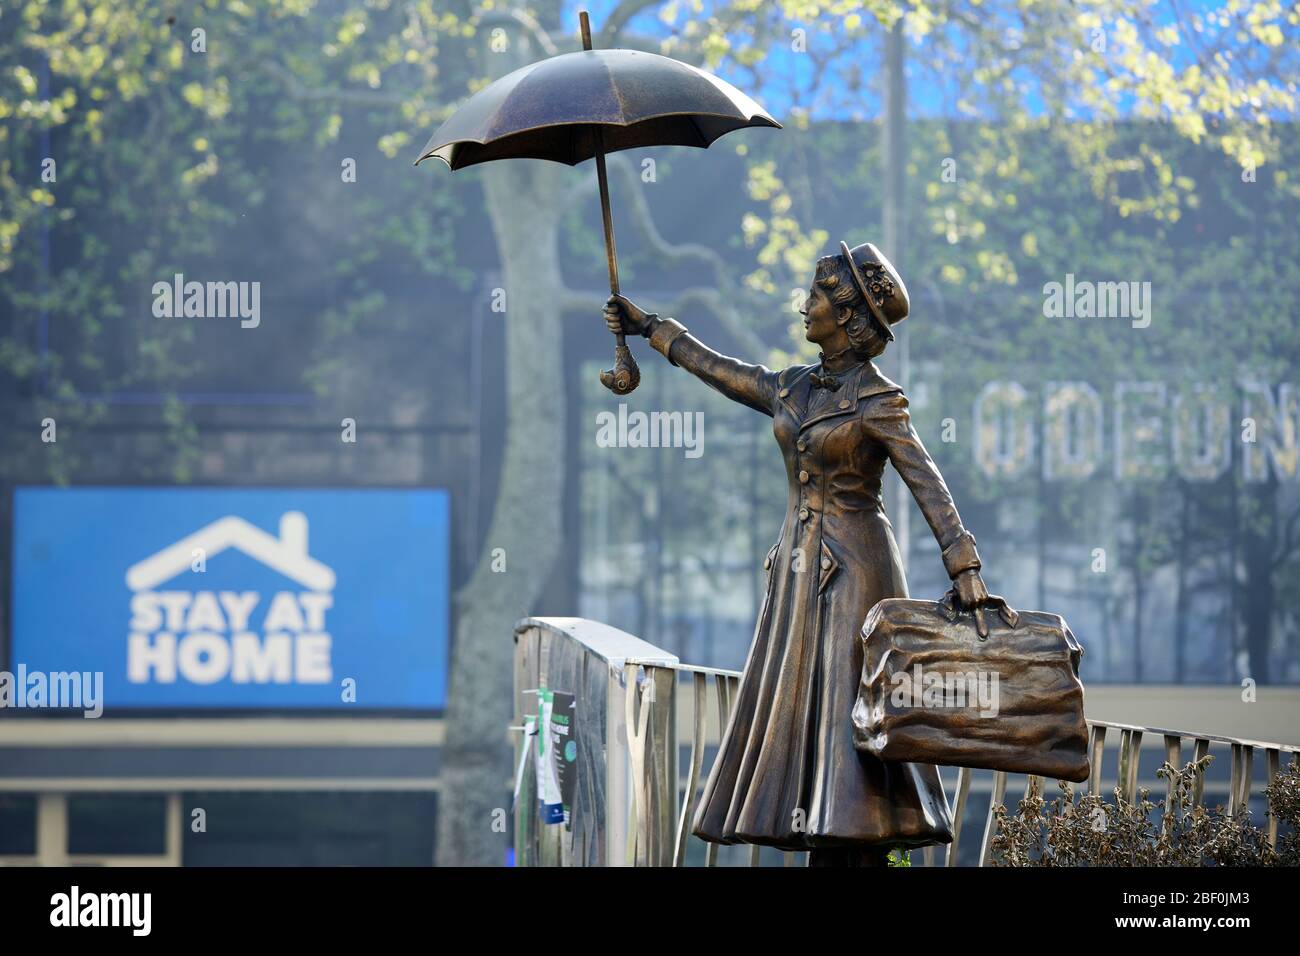 Londra, Regno Unito - 16 Apr 2020: Una statua di Mary Poppins a Leicester Square, di fronte ad un cartello che dice alle persone di rimanere a casa durante il blocco della pandemia di coronavirus Covid-19. Foto Stock